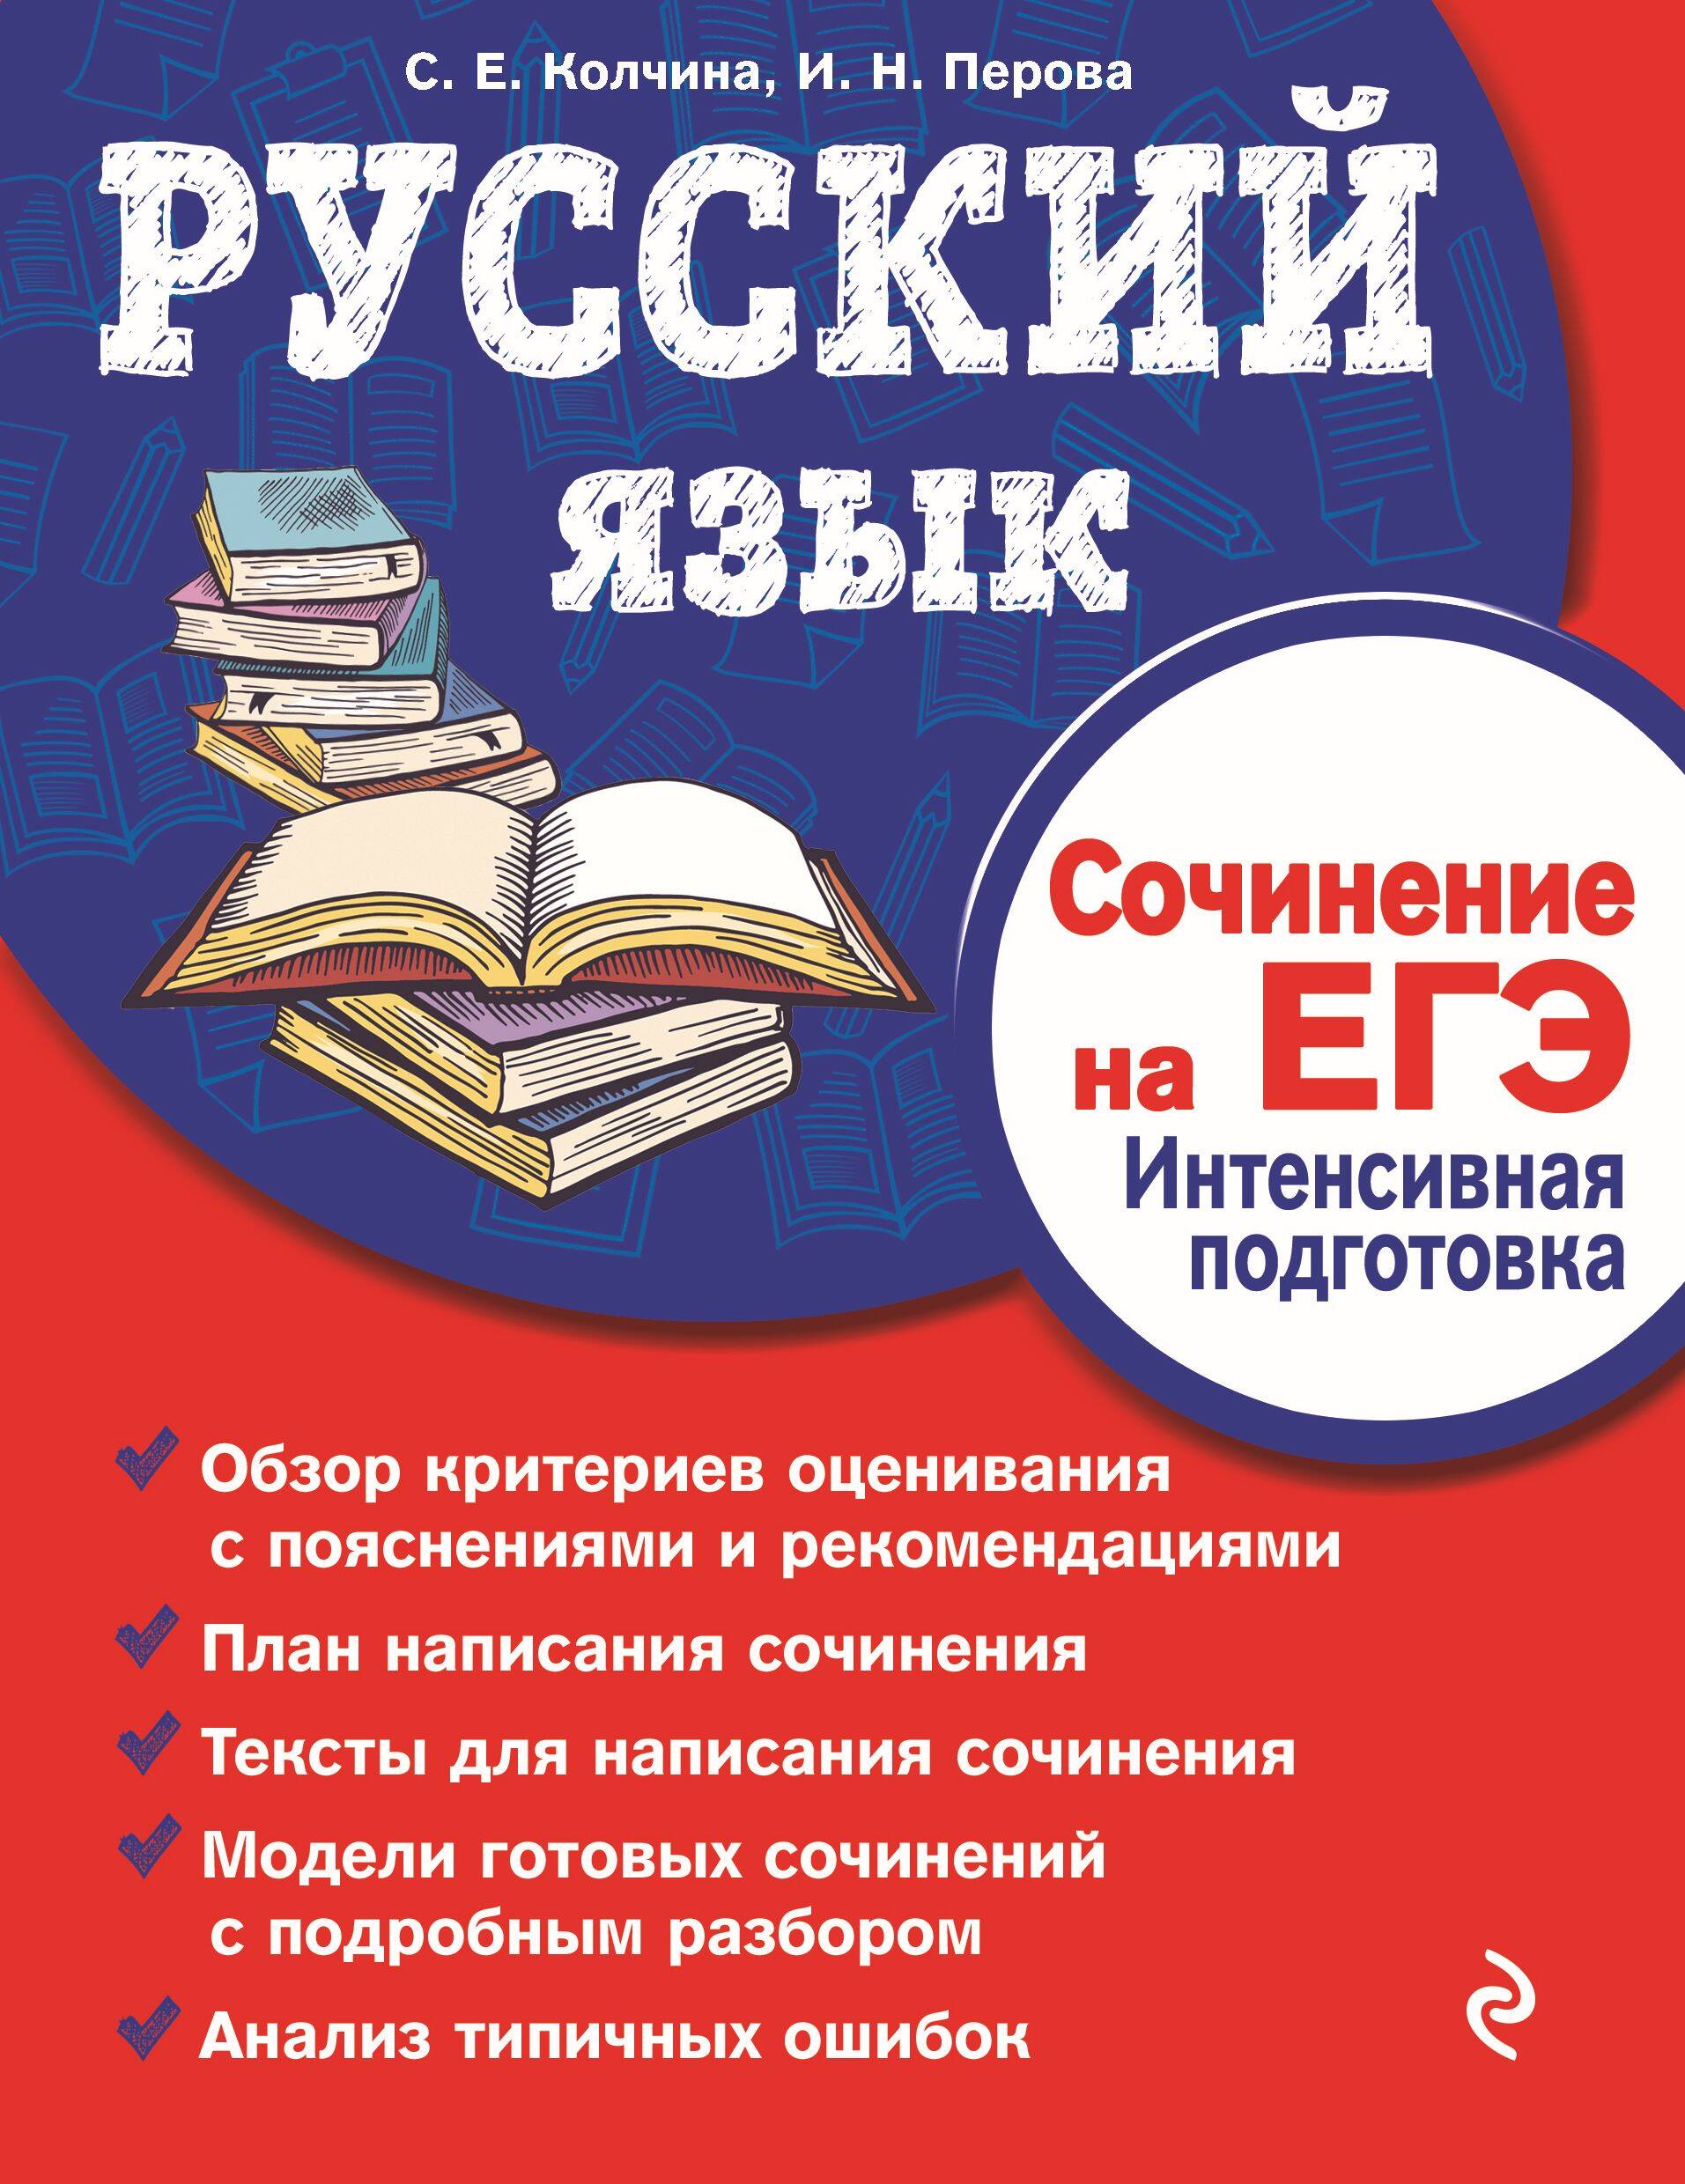 Русский язык. Сочинение на ЕГЭ. Интенсивная подготовка